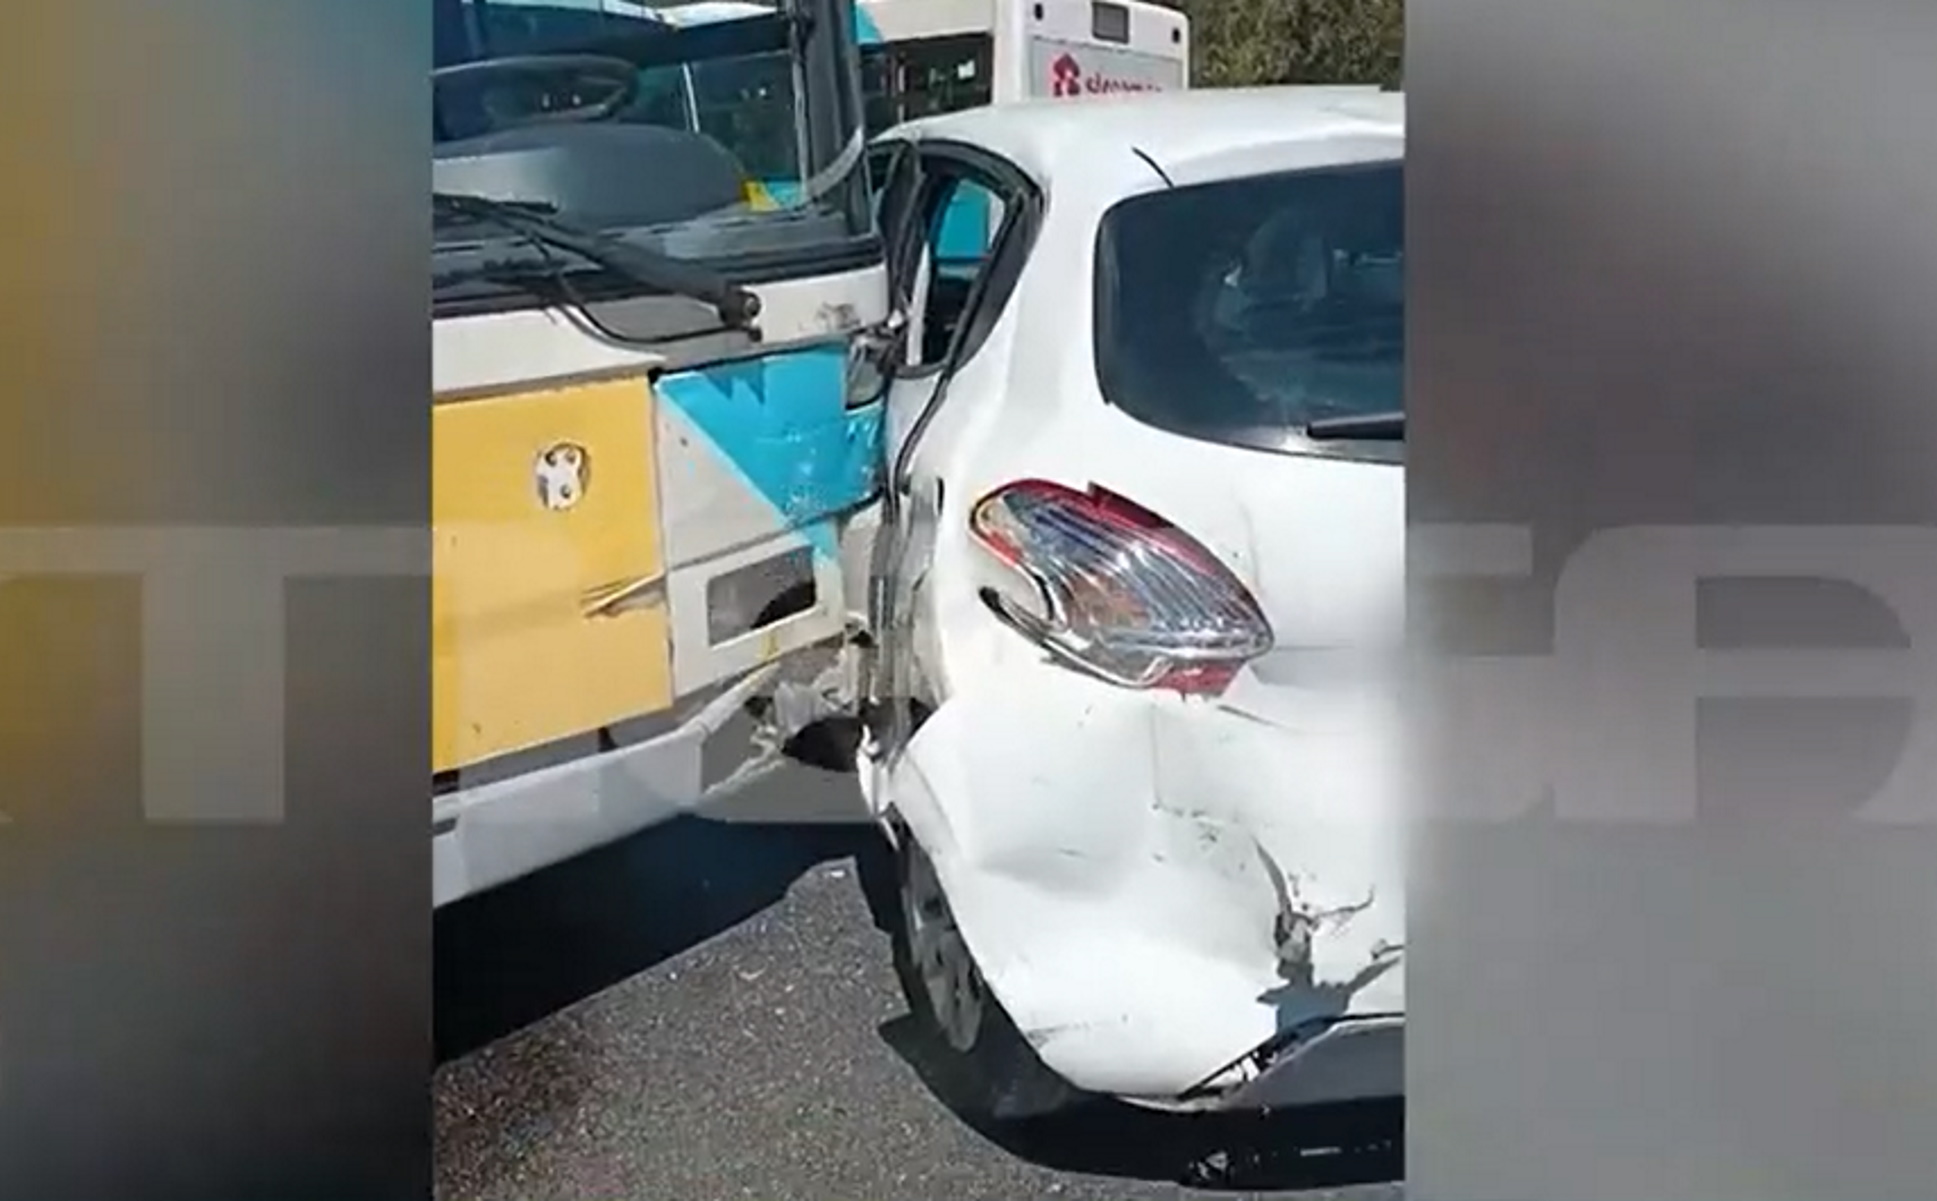 Συγγρού: Τροχαίο με αστικό λεωφορείο που πήρε παραμάζωμα δύο αυτοκίνητα